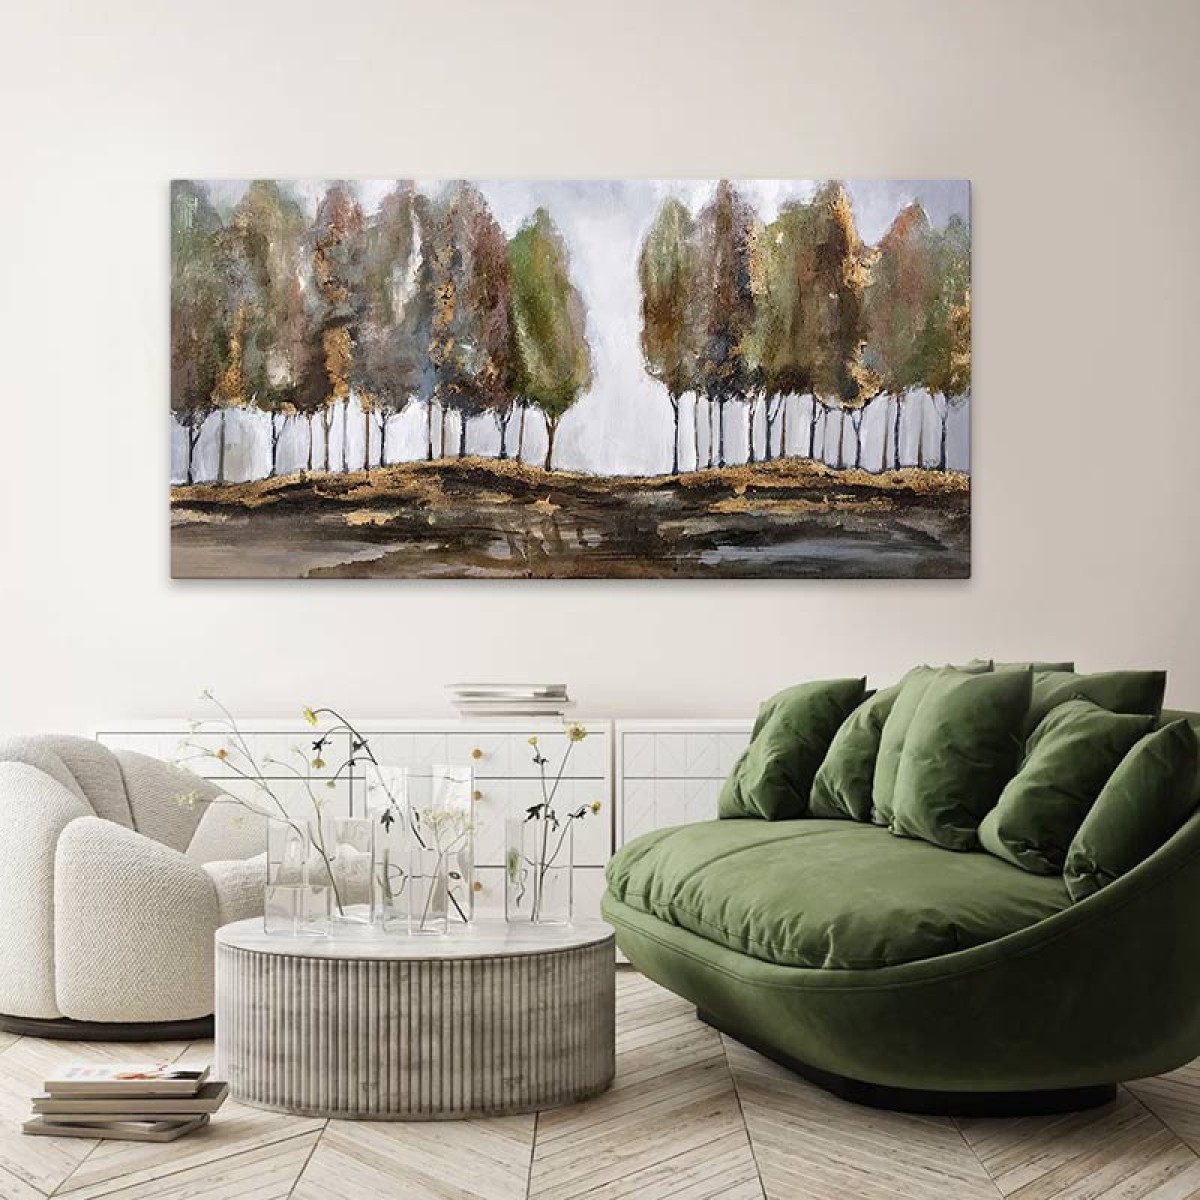 Πίνακας σε καμβά "Poplars"  ψηφιακής εκτύπωσης 125x80x3εκ.